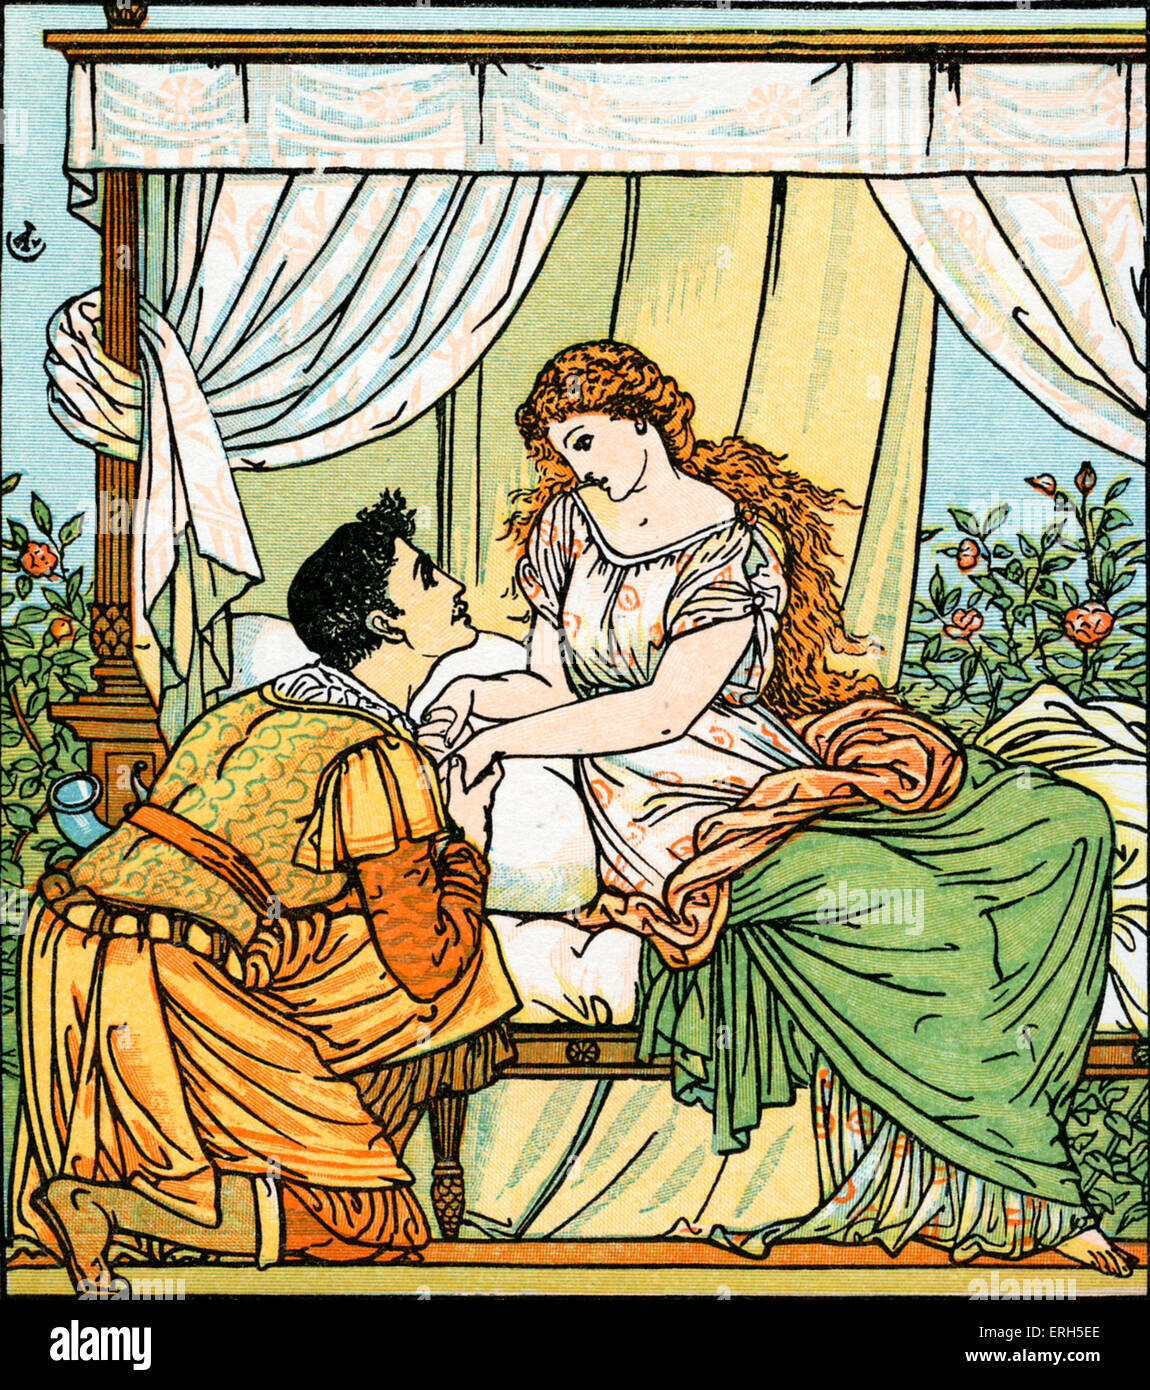 Sleeping Beauty écrit et illustré par Walter Crane et publiée en 1914. La scène représente le Prince waking Sleeping Banque D'Images